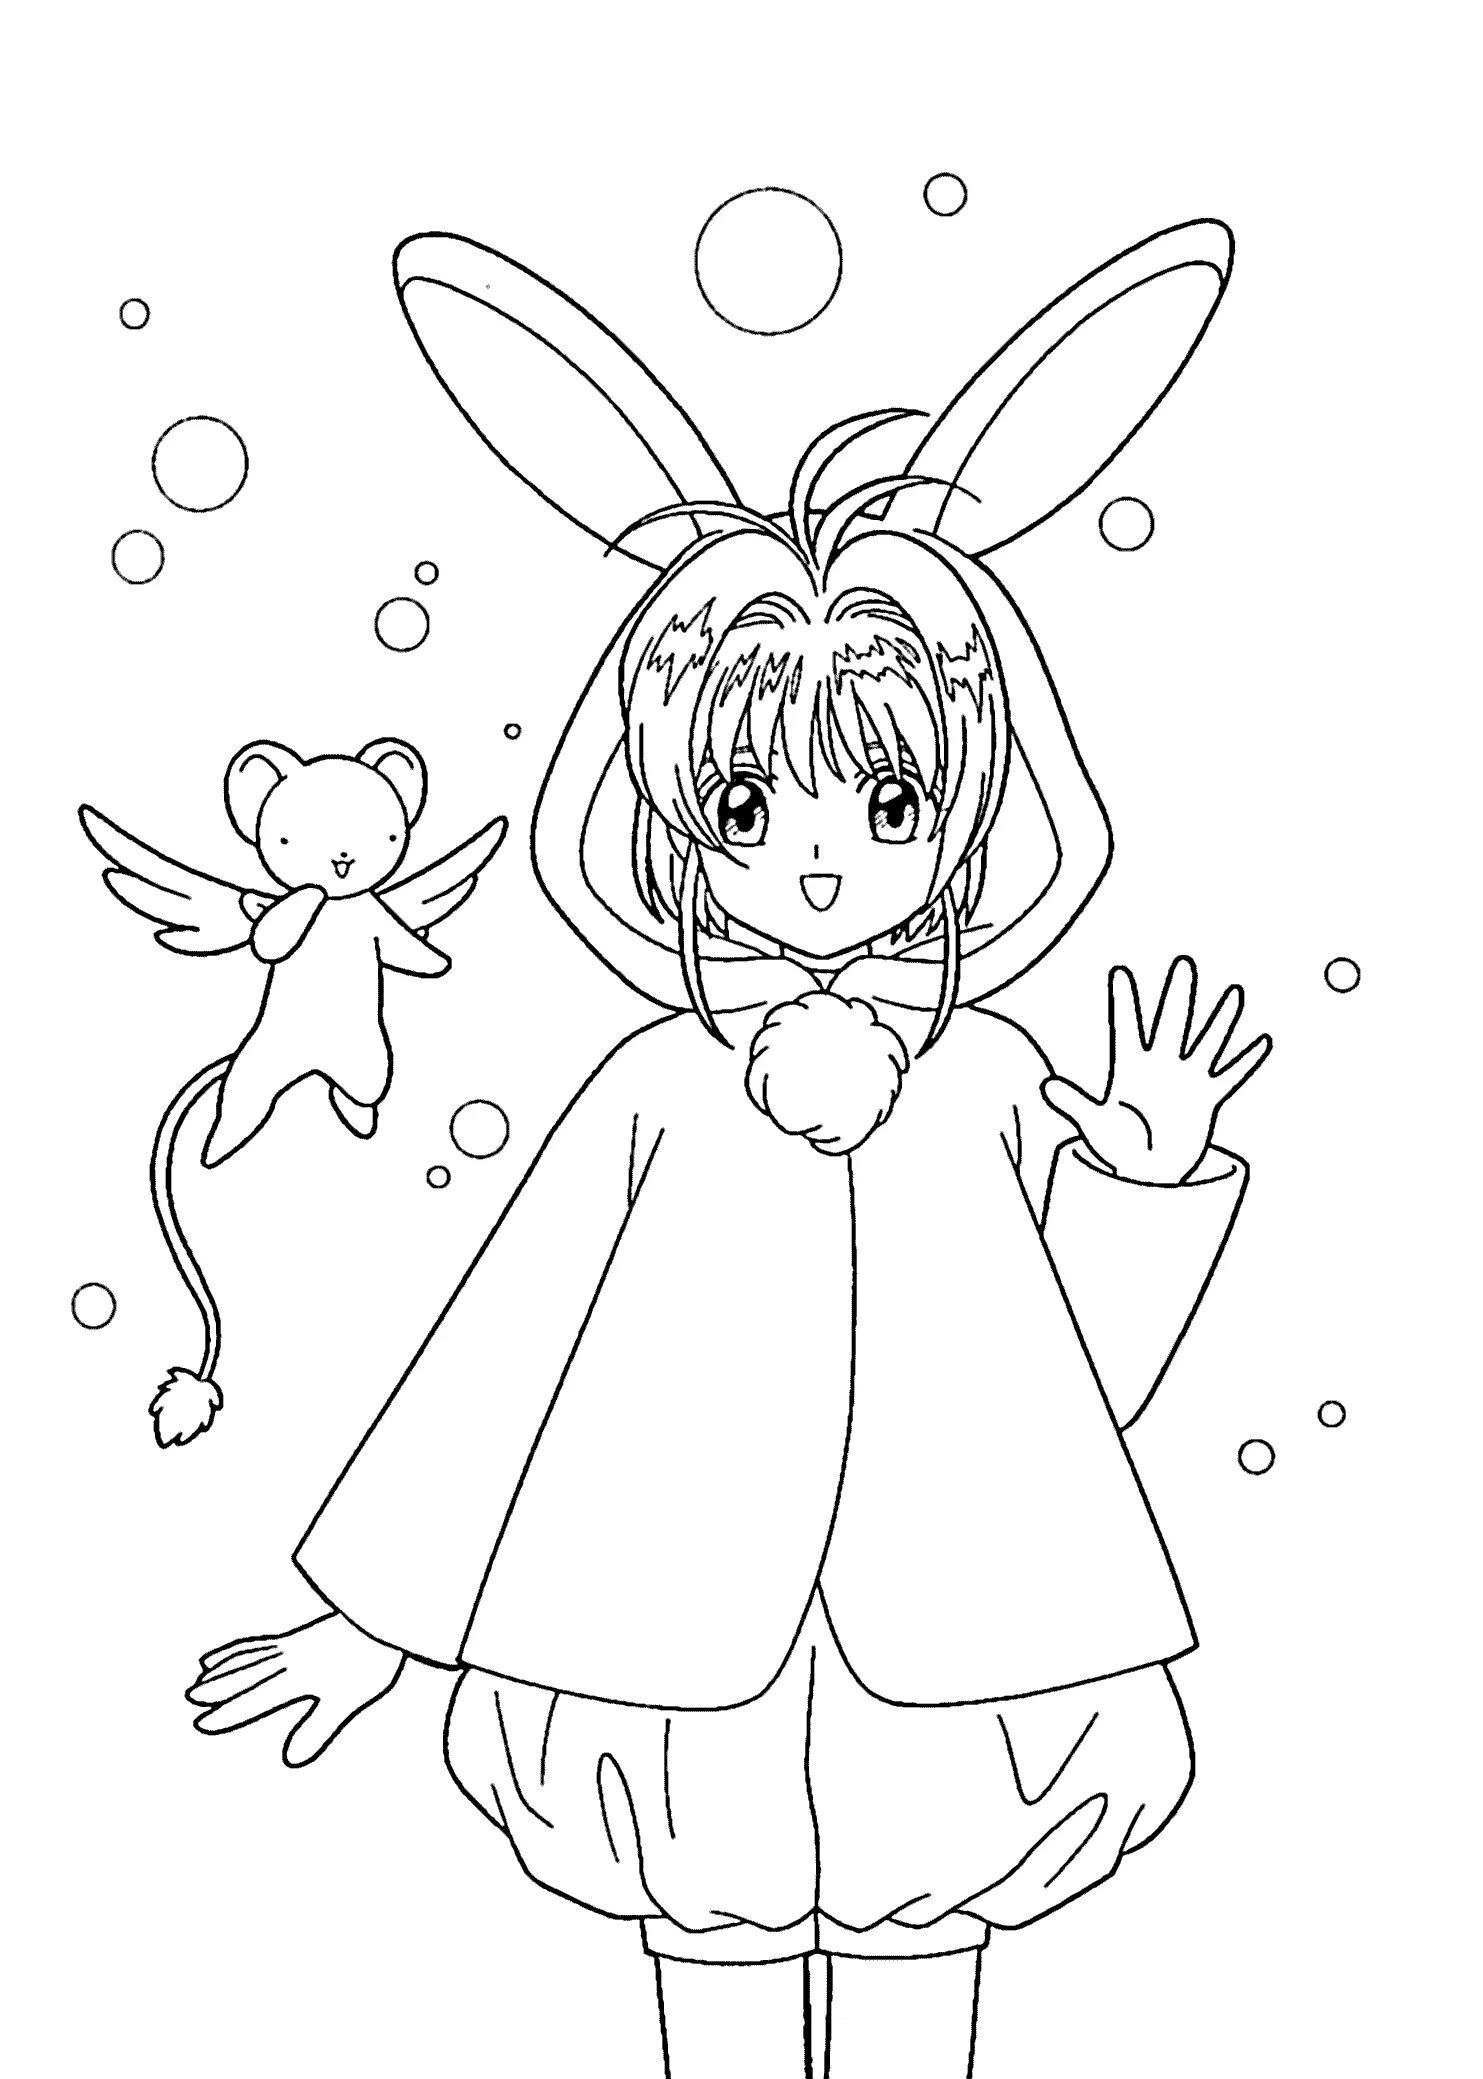 Nostalgic anime bunny coloring book